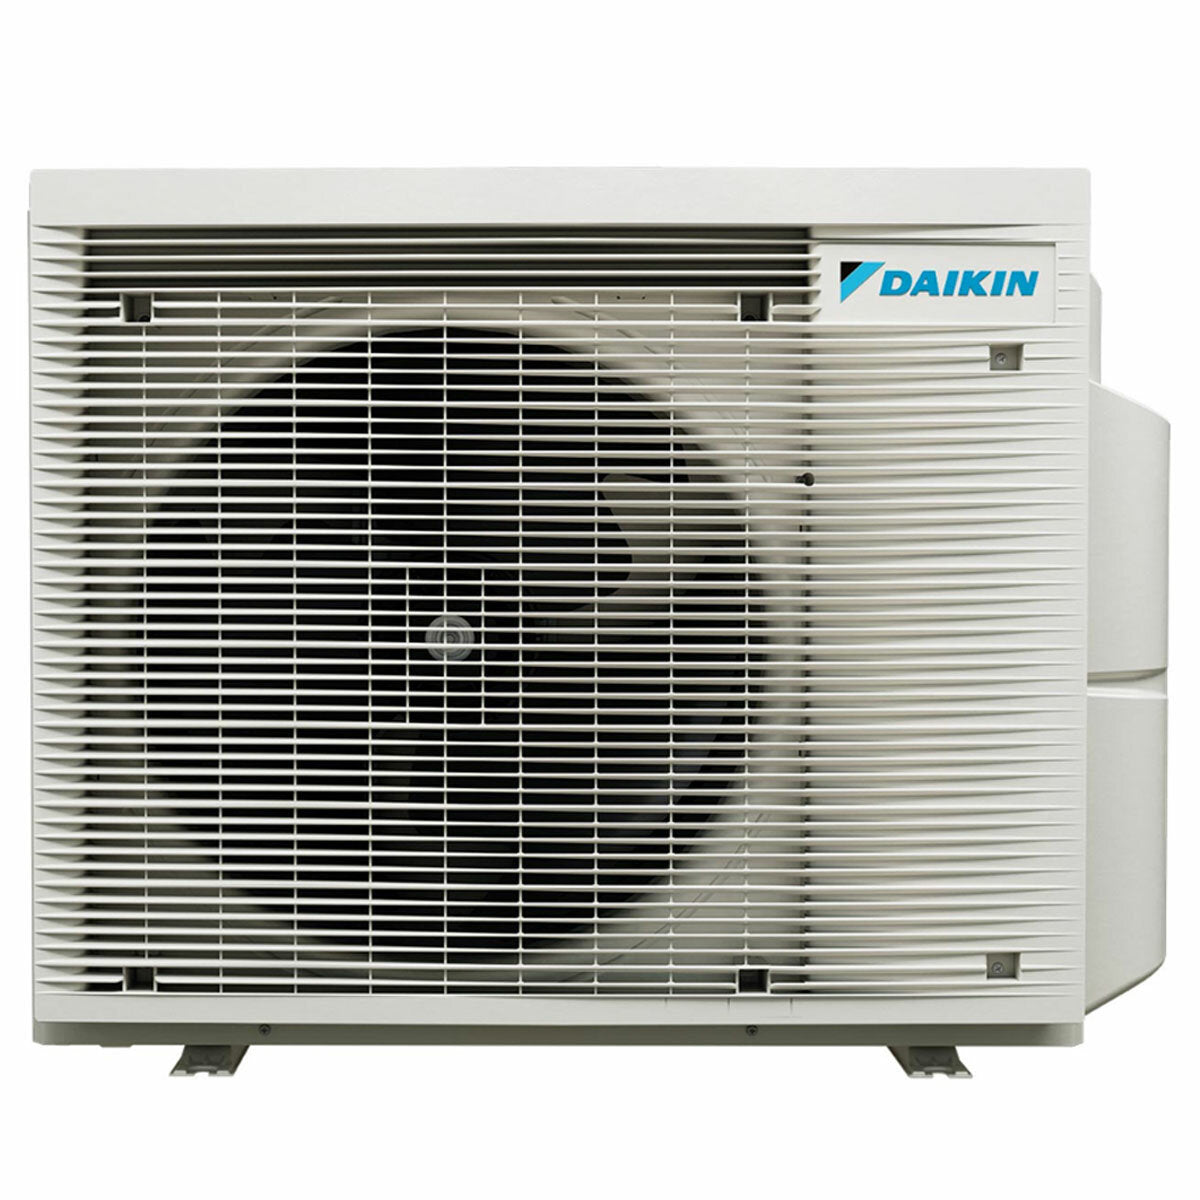 Daikin Stylish White Trial Split-Klimaanlage 9000+12000+18000 BTU Inverter A++ WLAN-Außeneinheit 7,8 kW